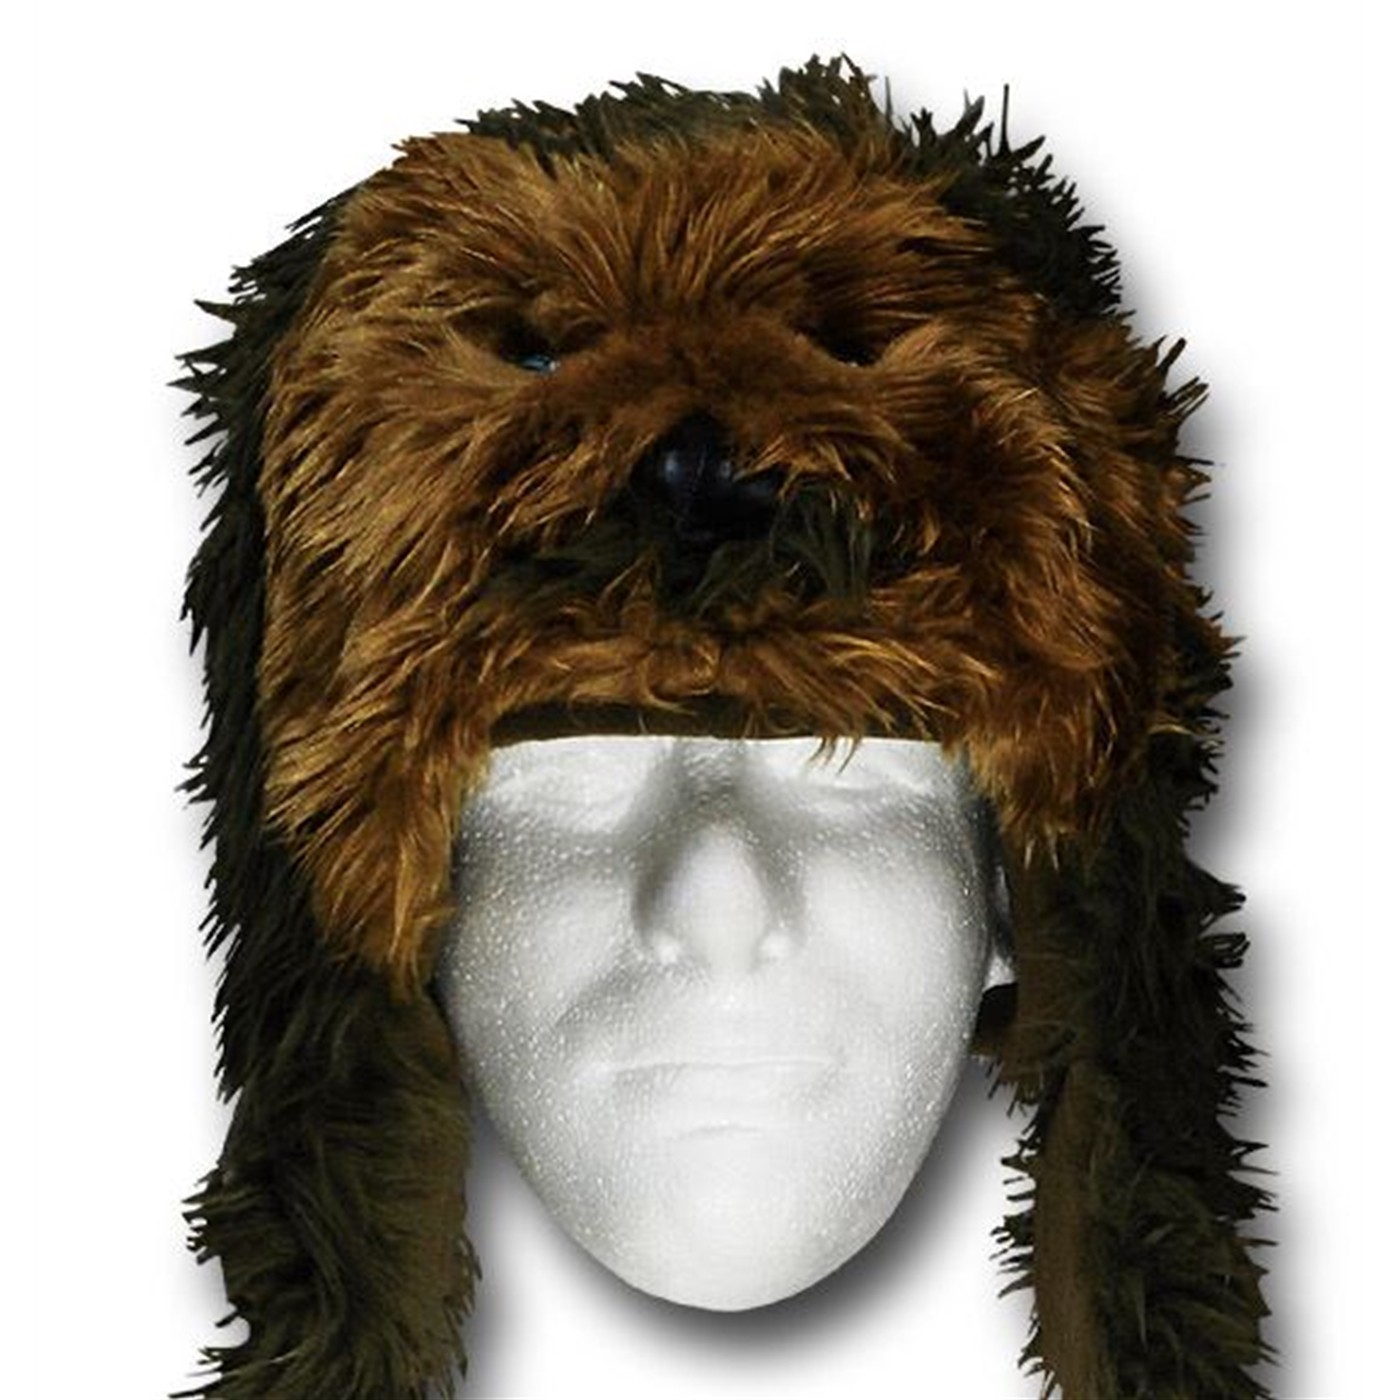 Star Wars Chewbacca Peruvian Cap